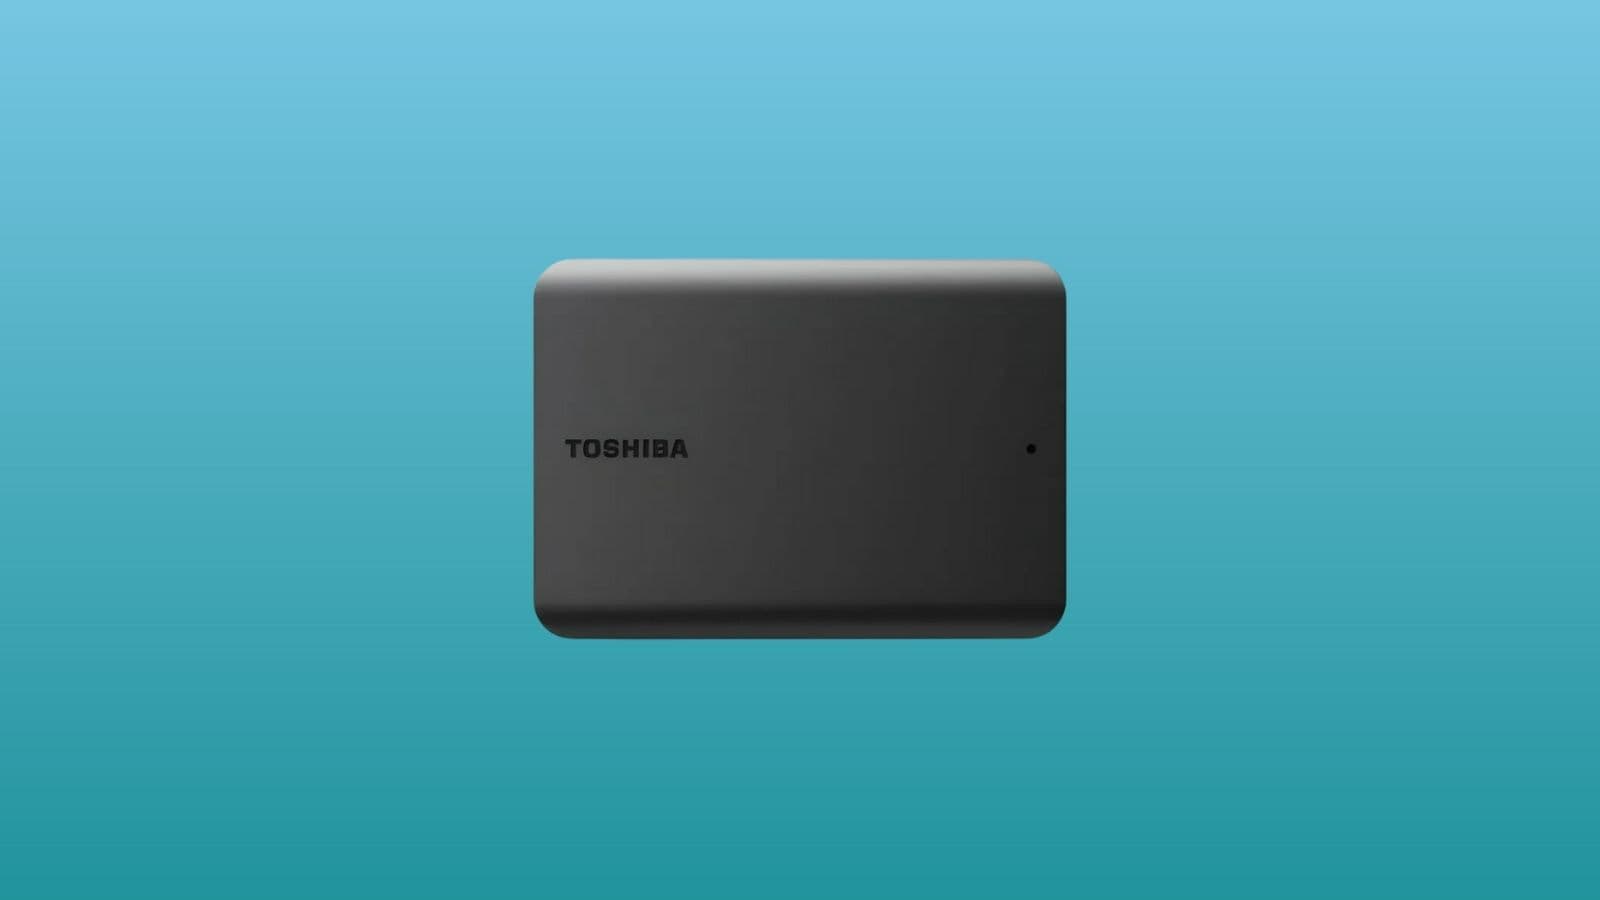 Ce disque dur Toshiba de 4 To est à prix réduit, découvrez pourquoi sur ce  site